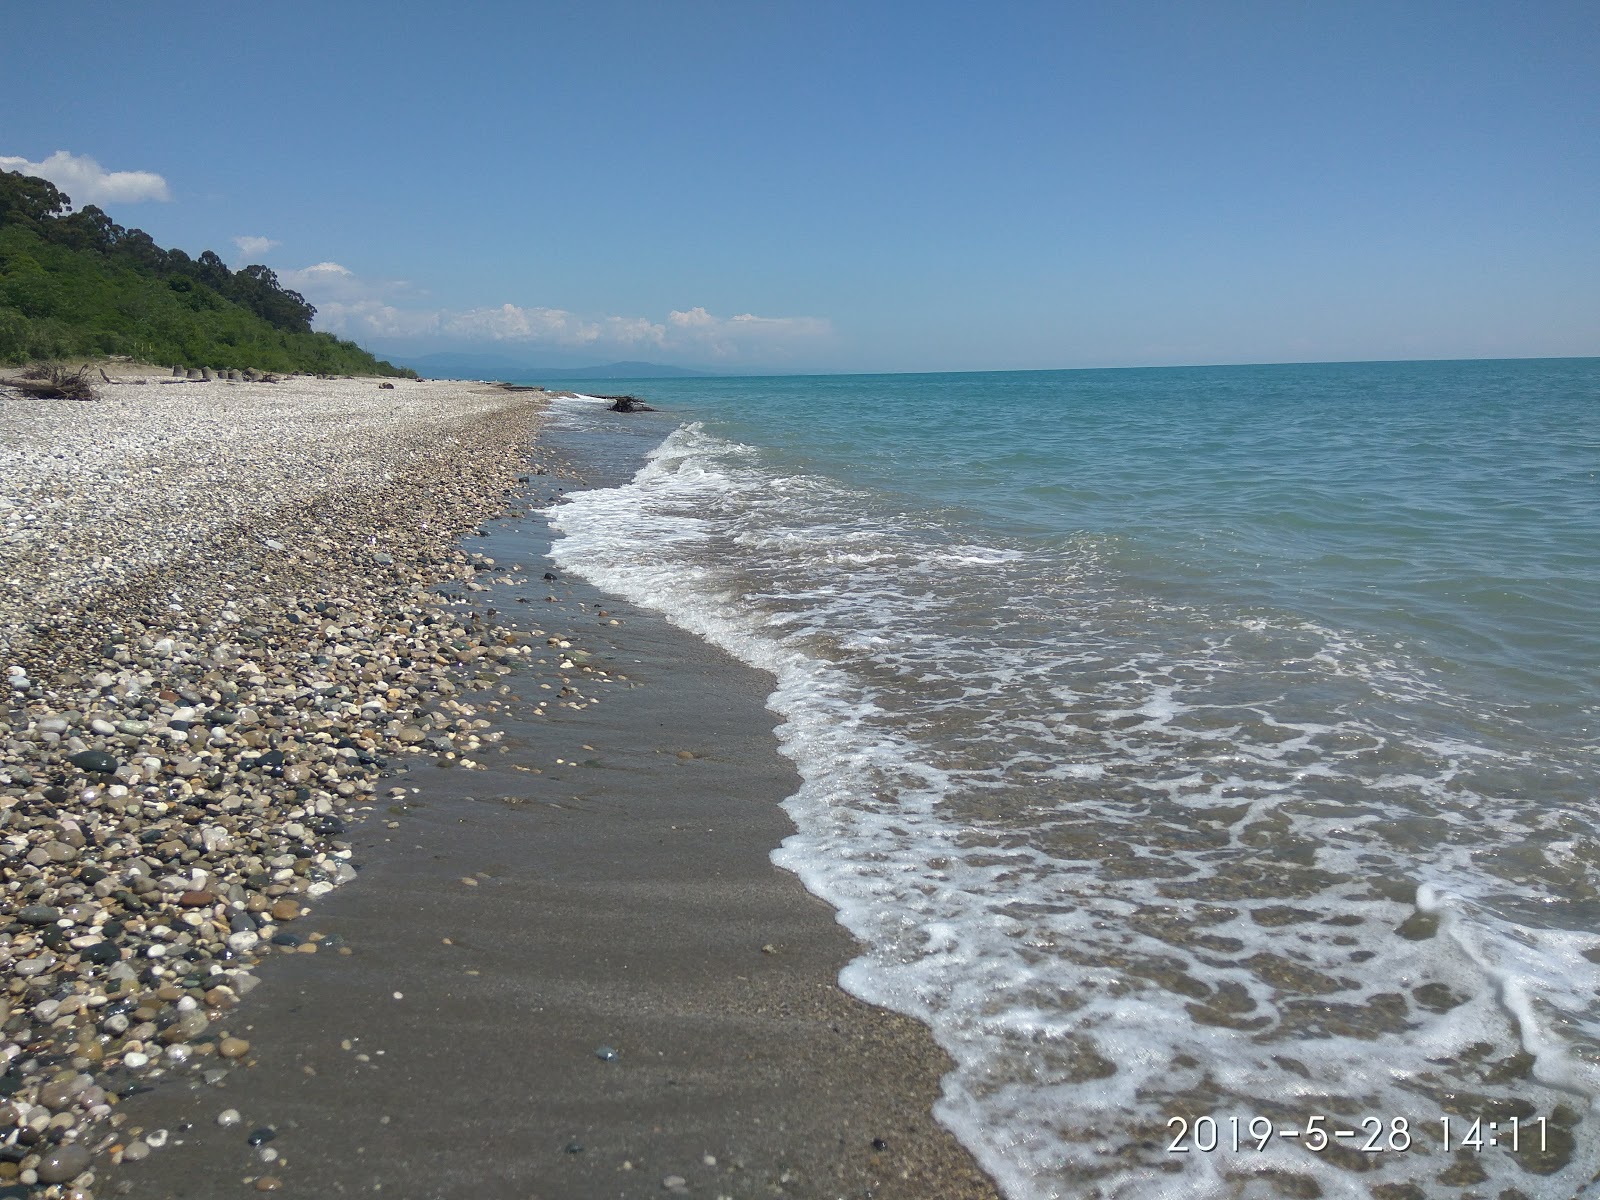 Primorskoe beach'in fotoğrafı çakıl ile kum yüzey ile